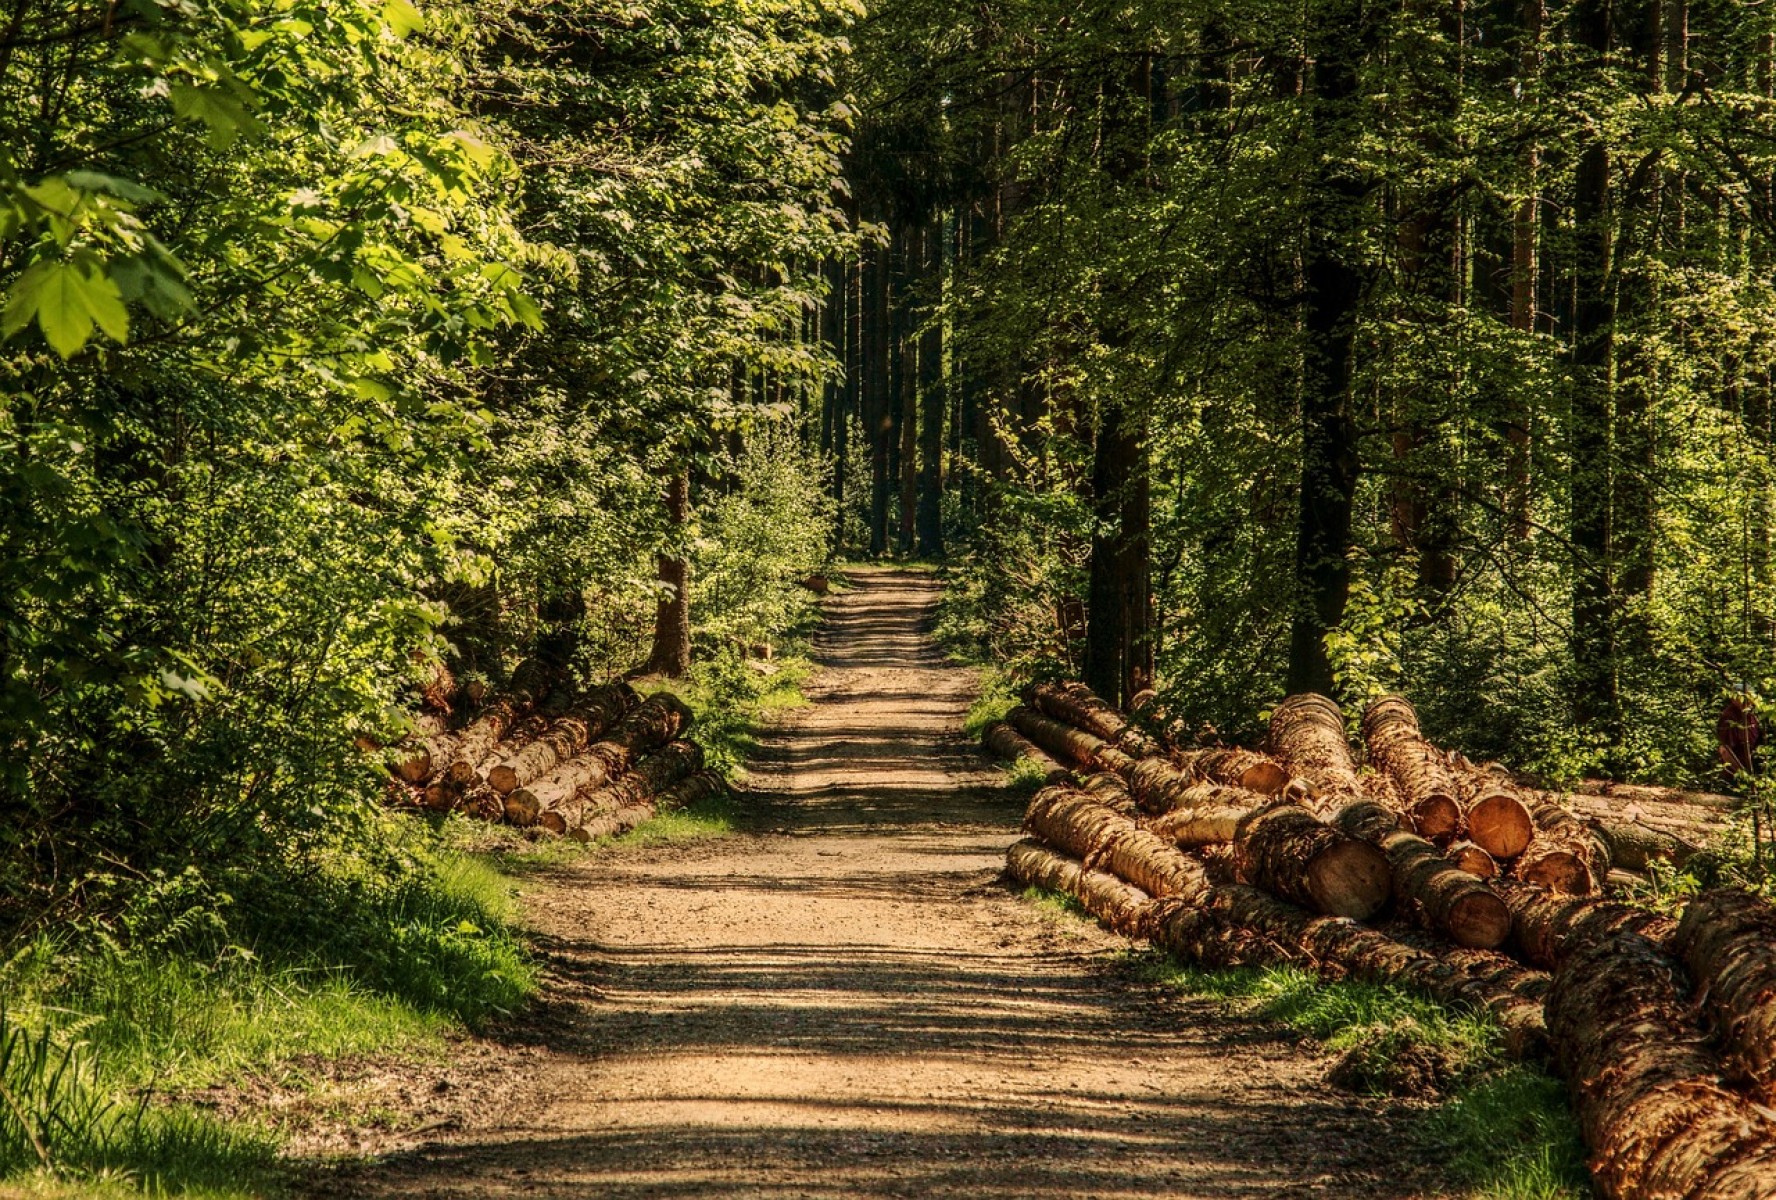 Erdészeti szakirányítók és szaktanácsadók figyelem! Online tájékoztató sorozat indul az új KAP-ról